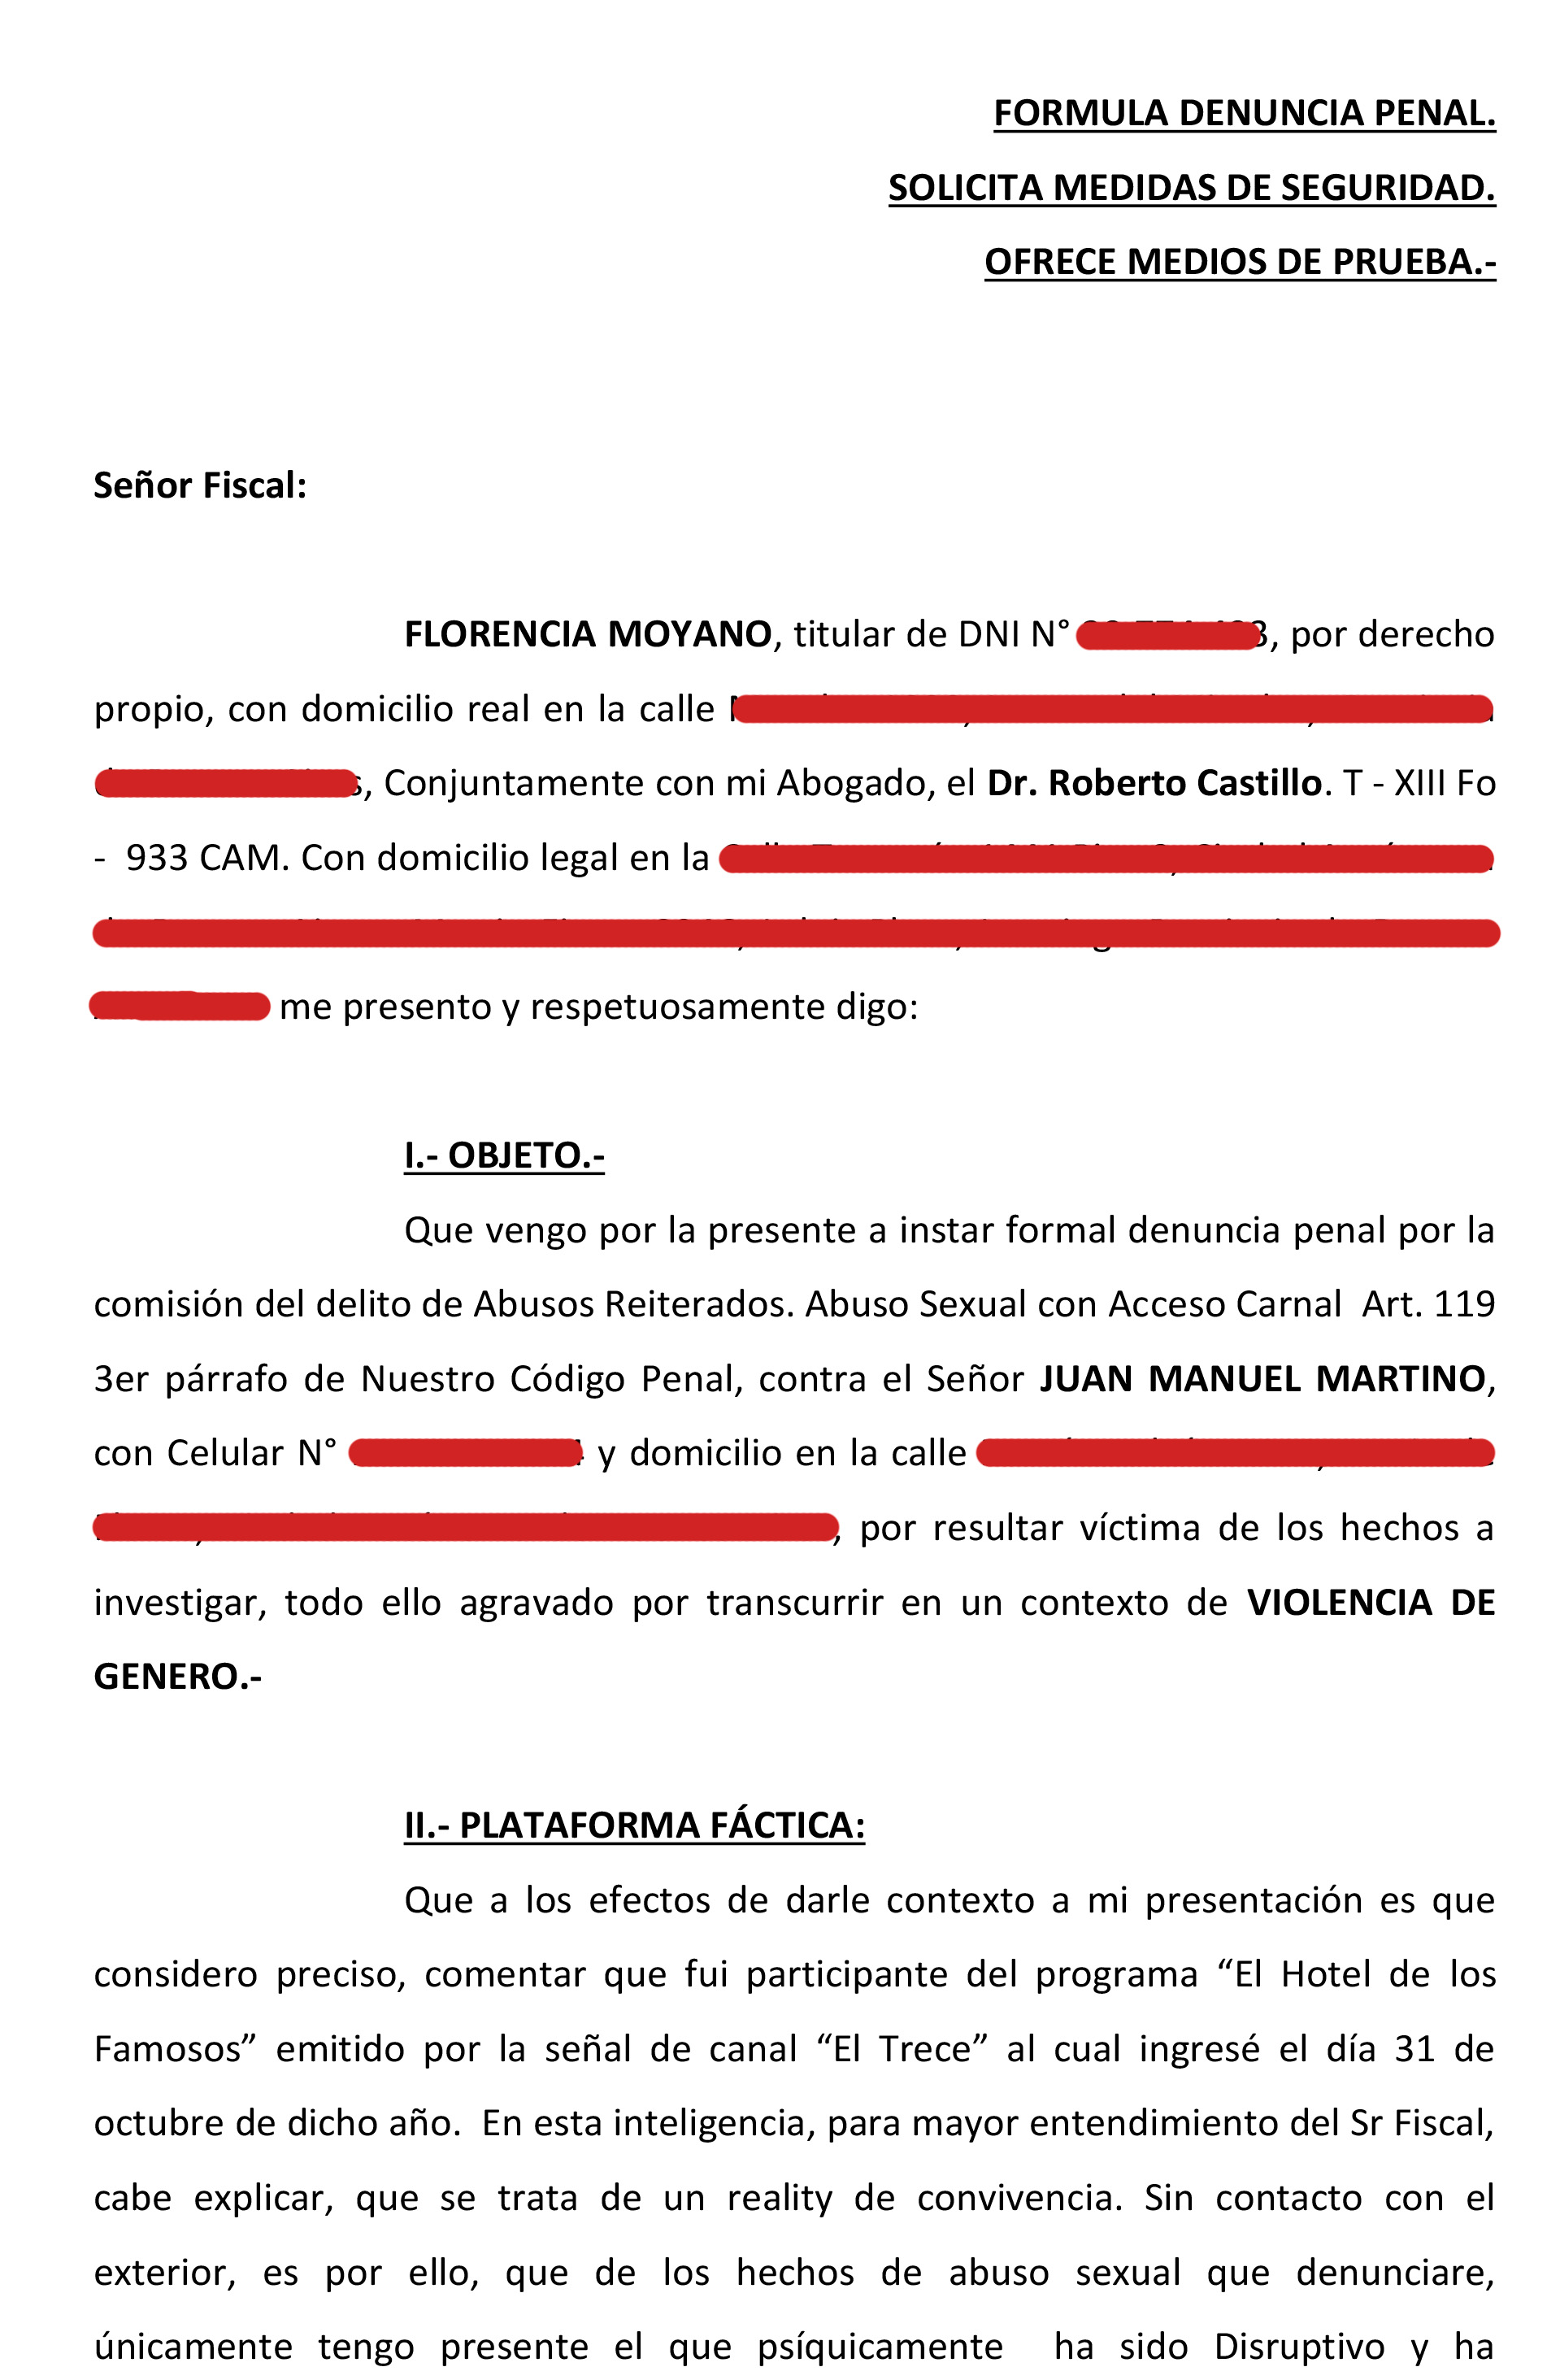 La denuncia judicial de Flor Moyano contra Juani Martino, hoja 1